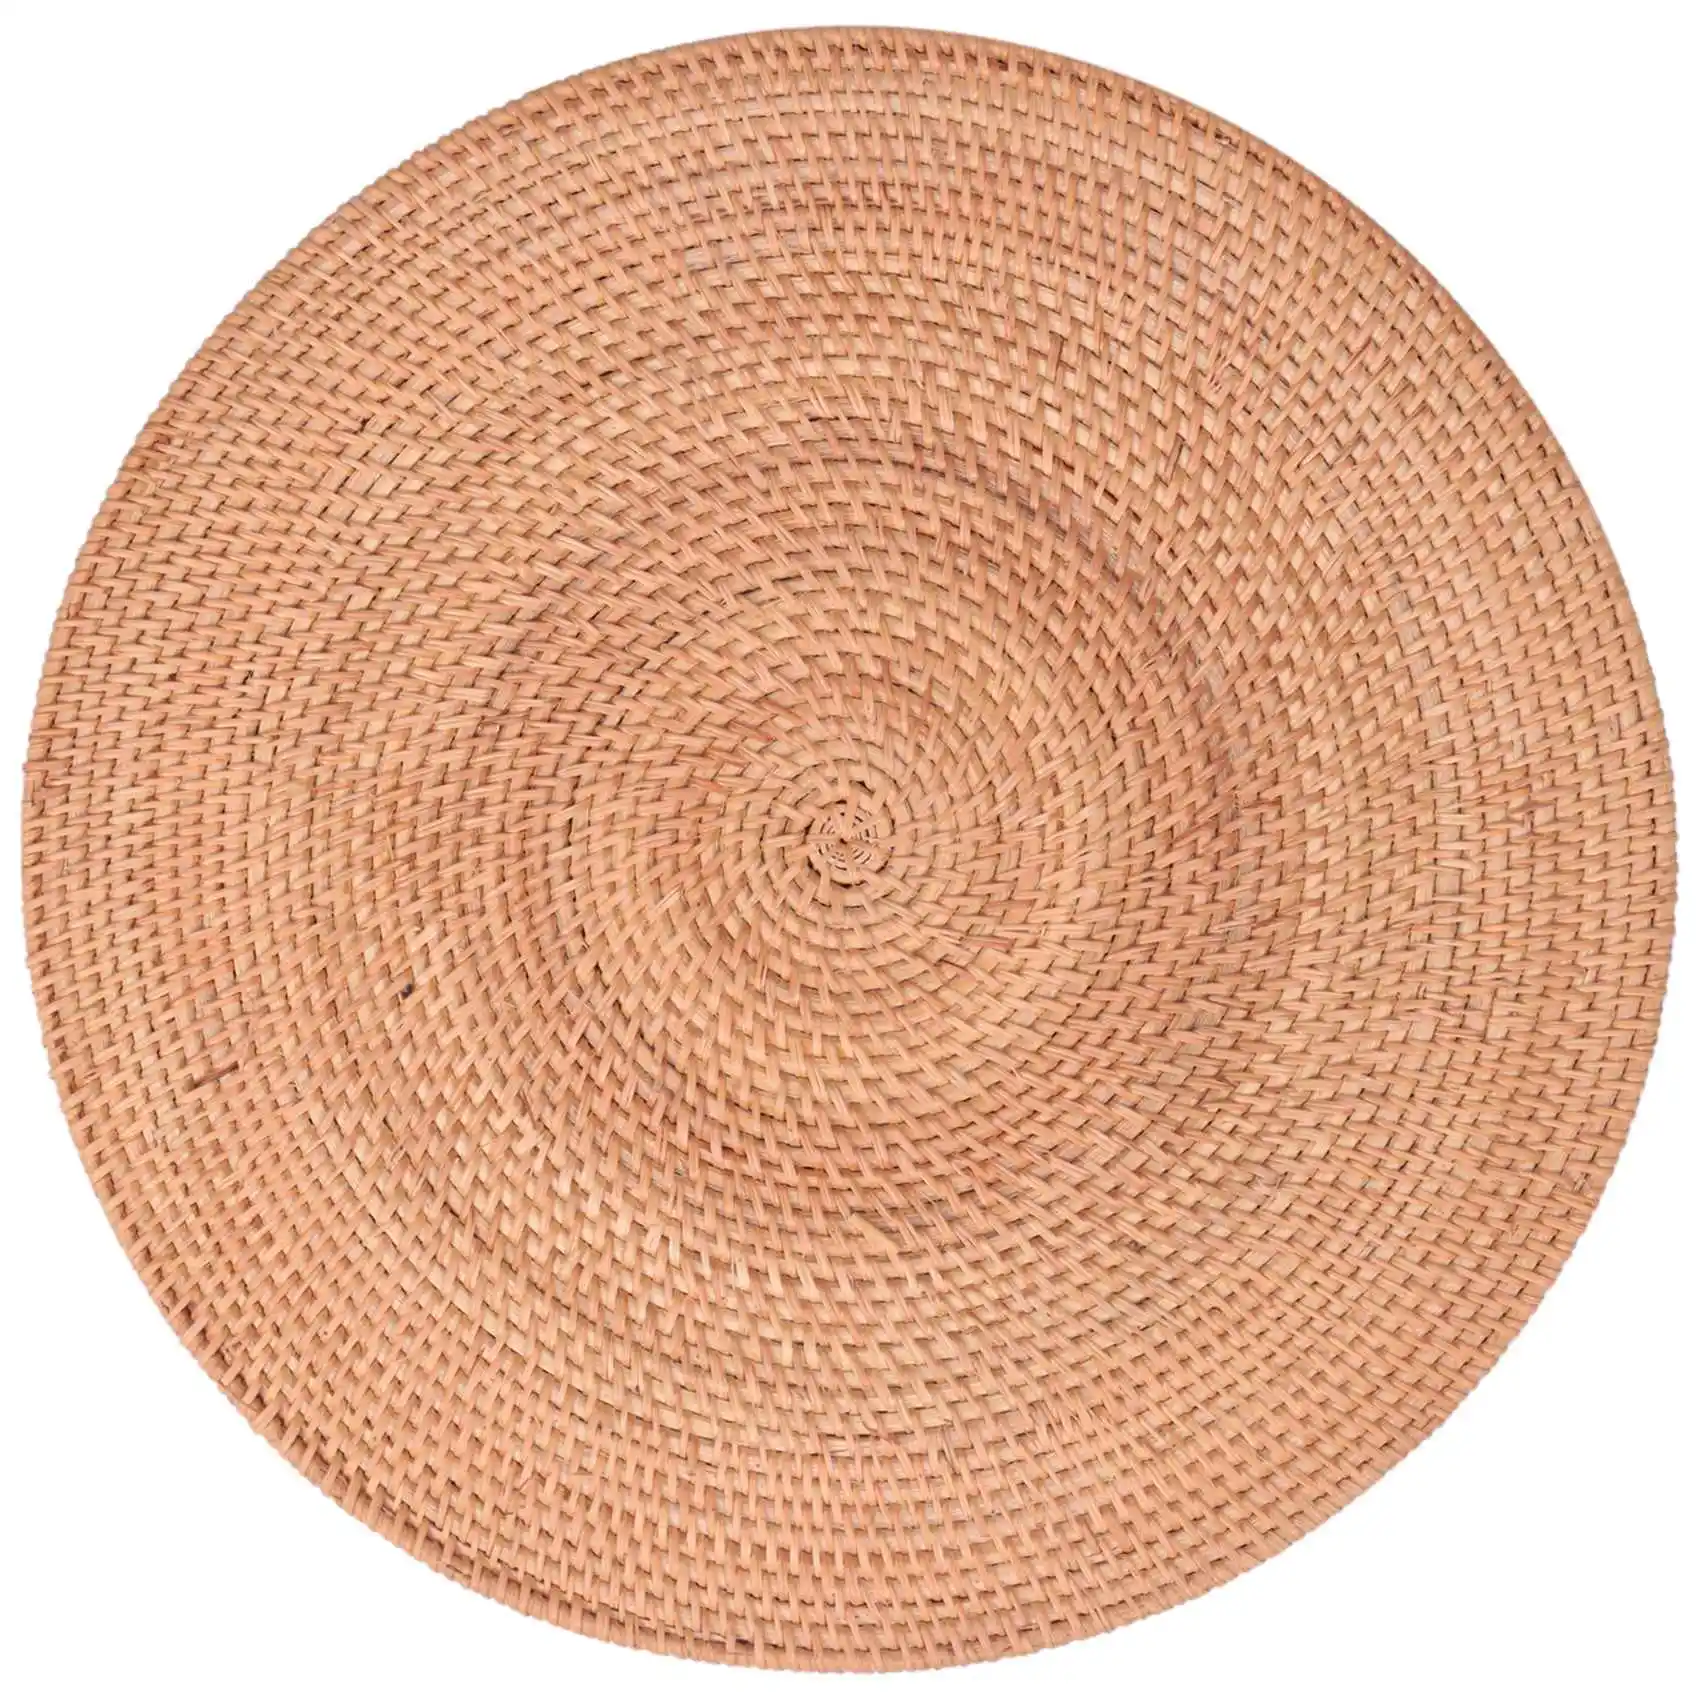 

Плетеная подстилка из ротанга, коврики для стола, нескользящий термостойкий Коврик для места, плетеная подстилка, круглые подставки для горячих блюд, 40 см